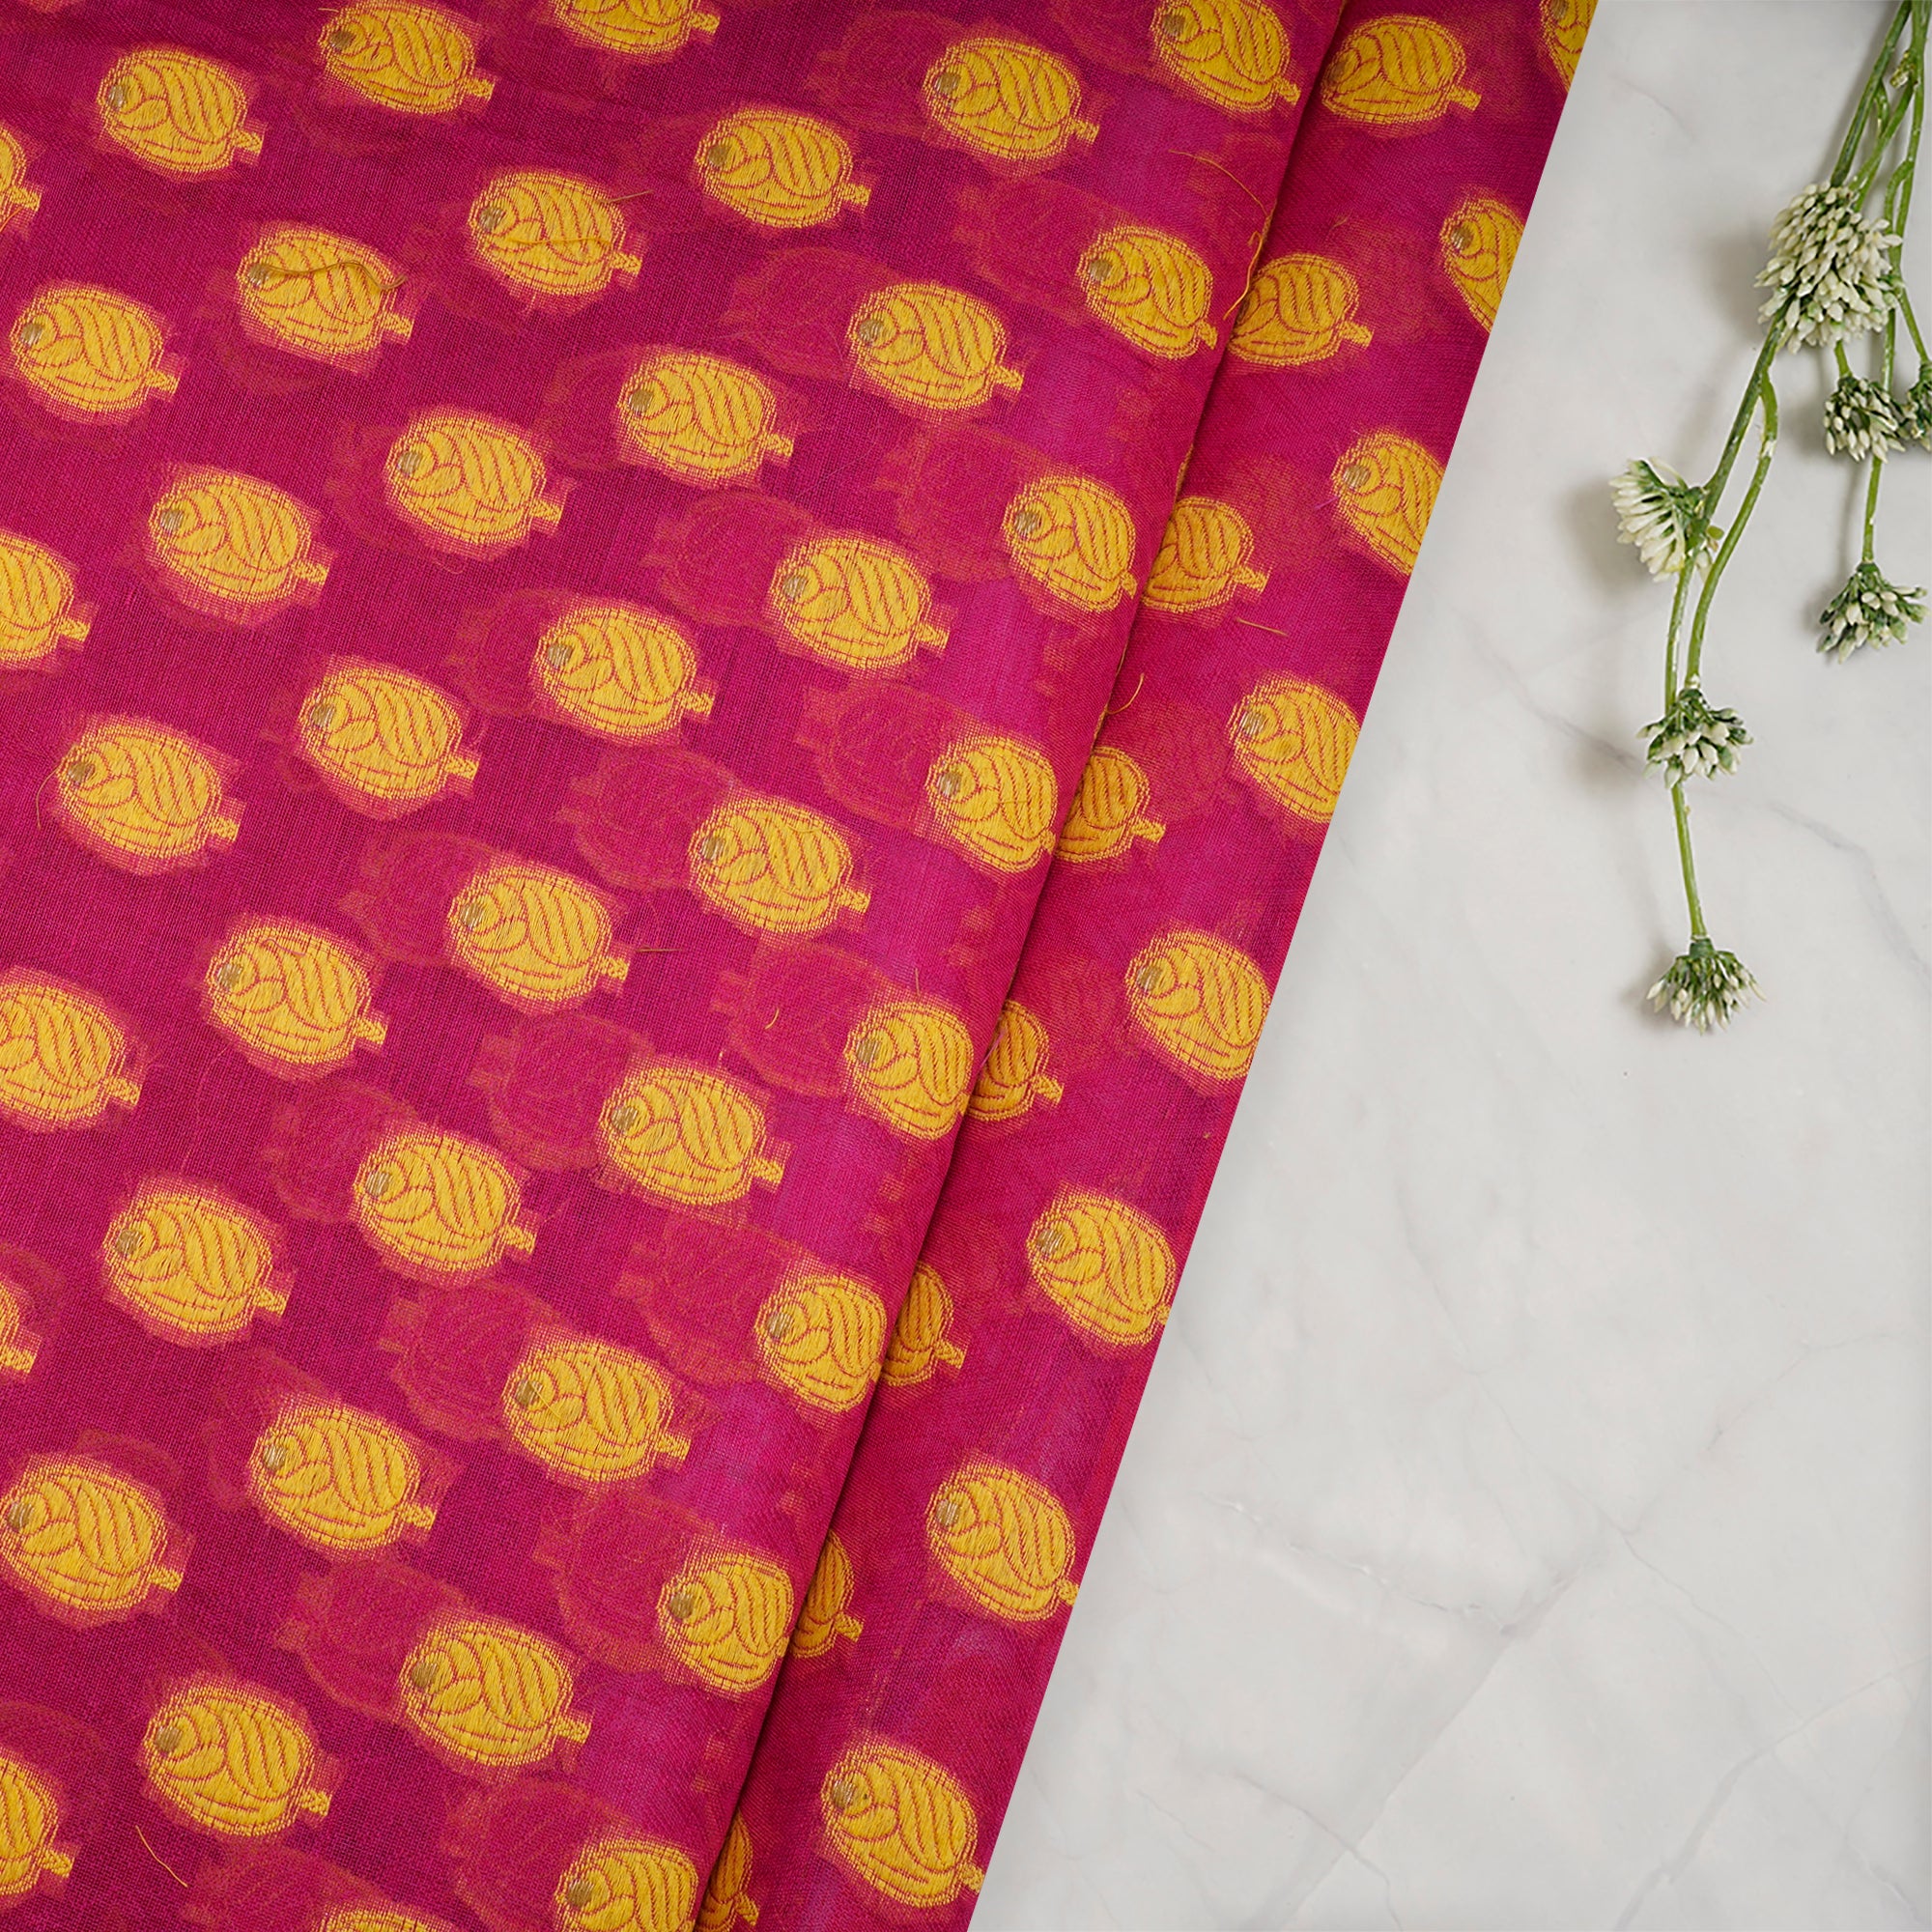 Rani Pink-Yellow Booti Pattern Handwoven Meenakari Chanderi Brocade Fabric